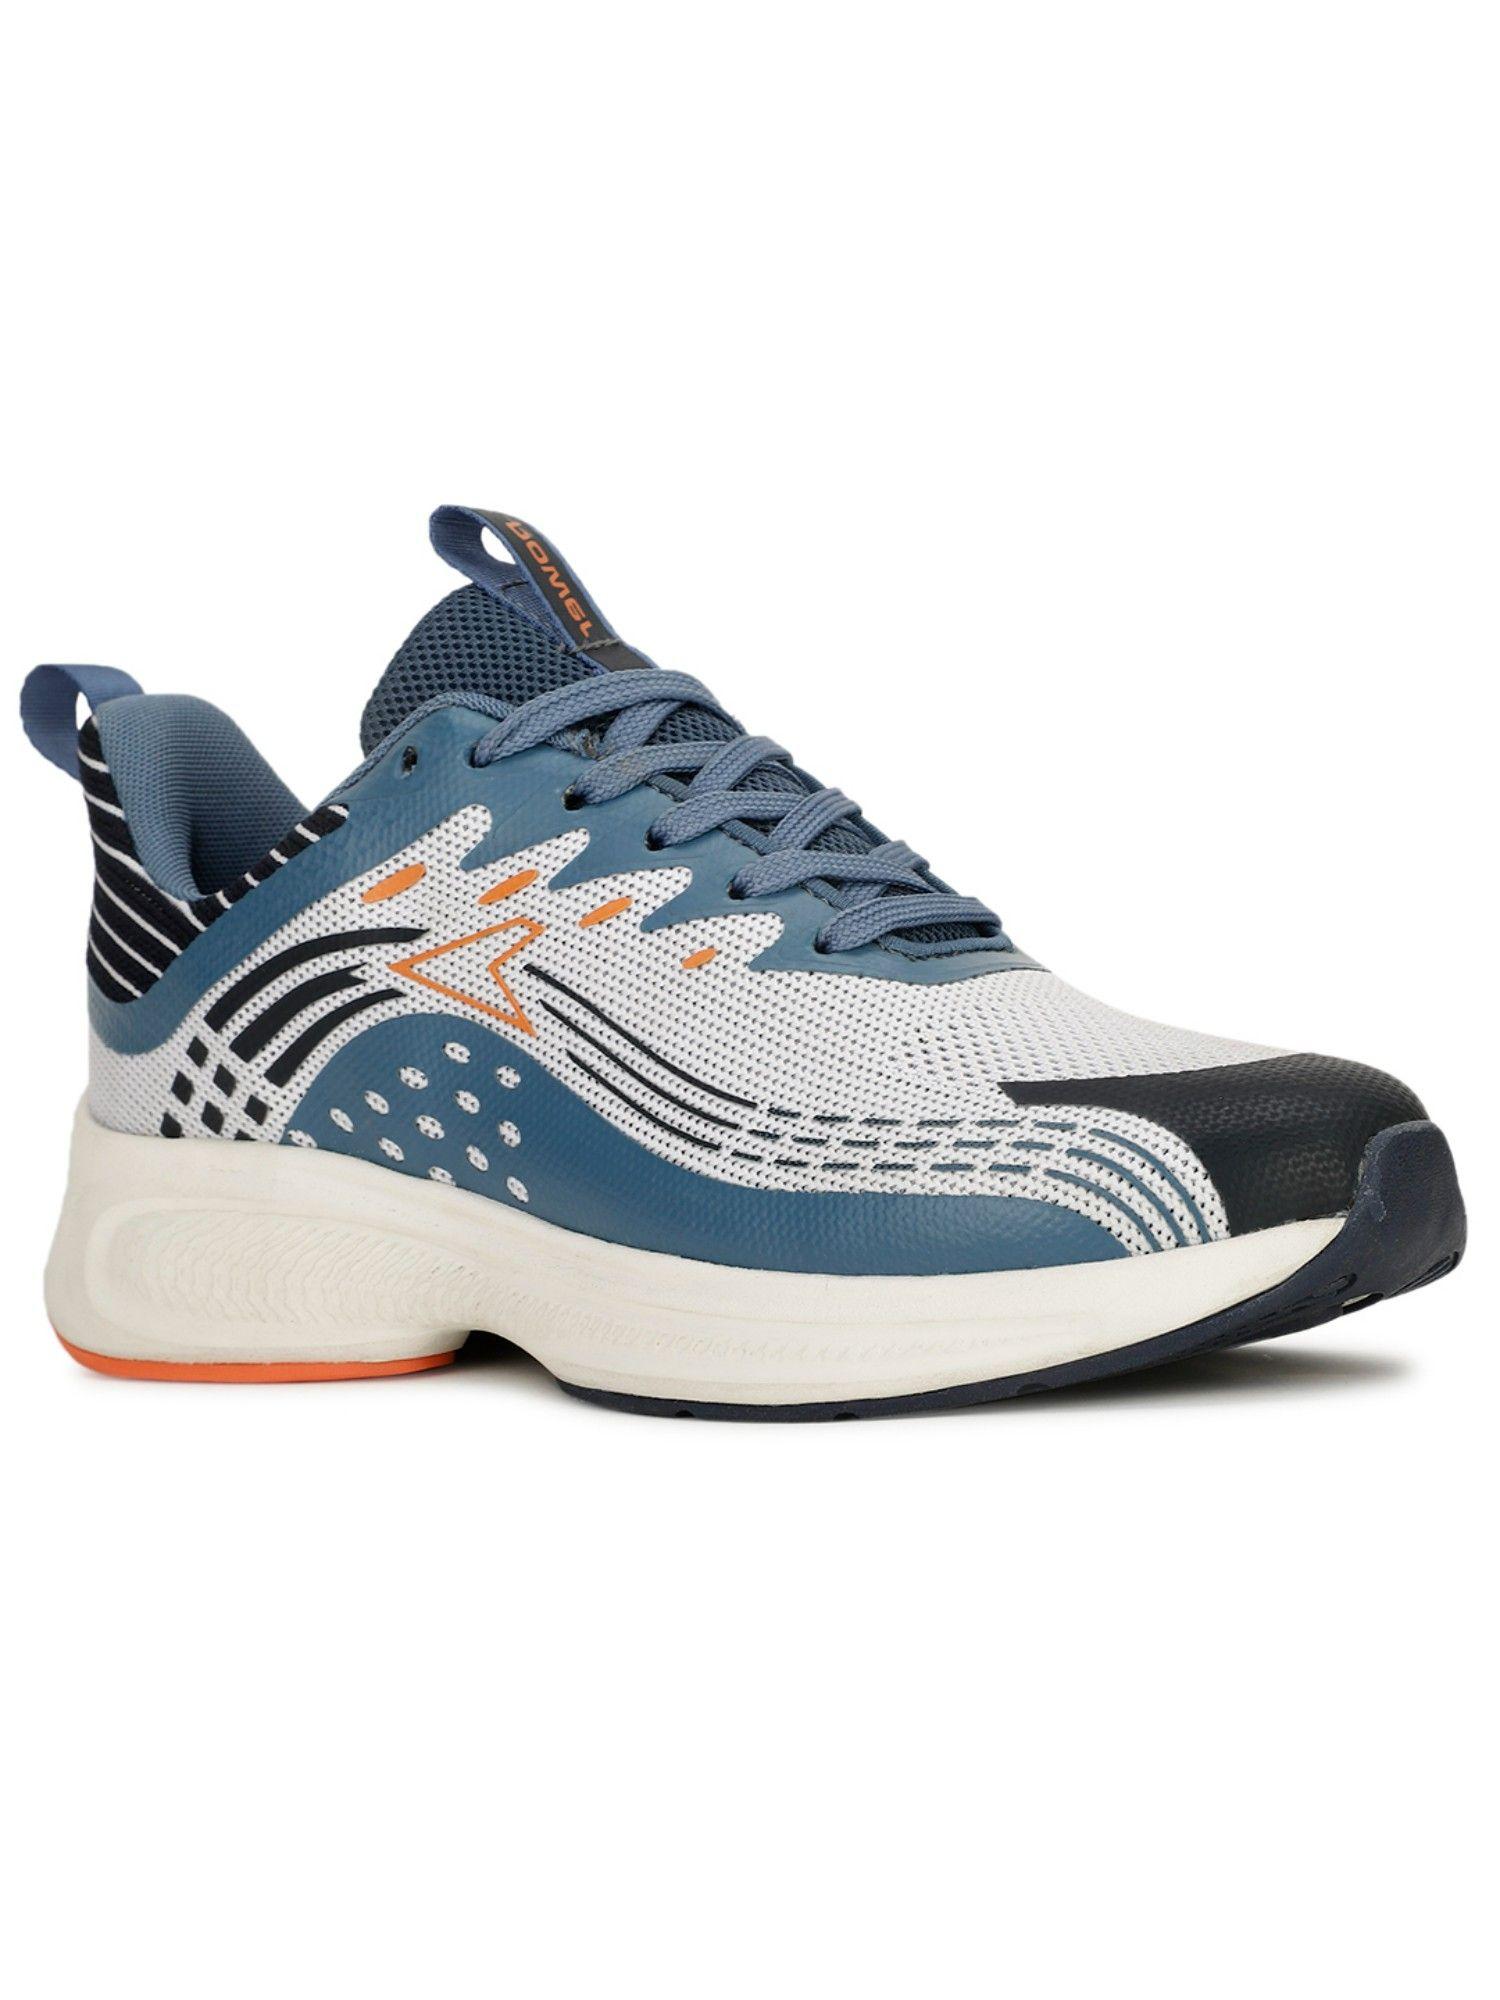 fester-running-shoes-for-men-(blue)